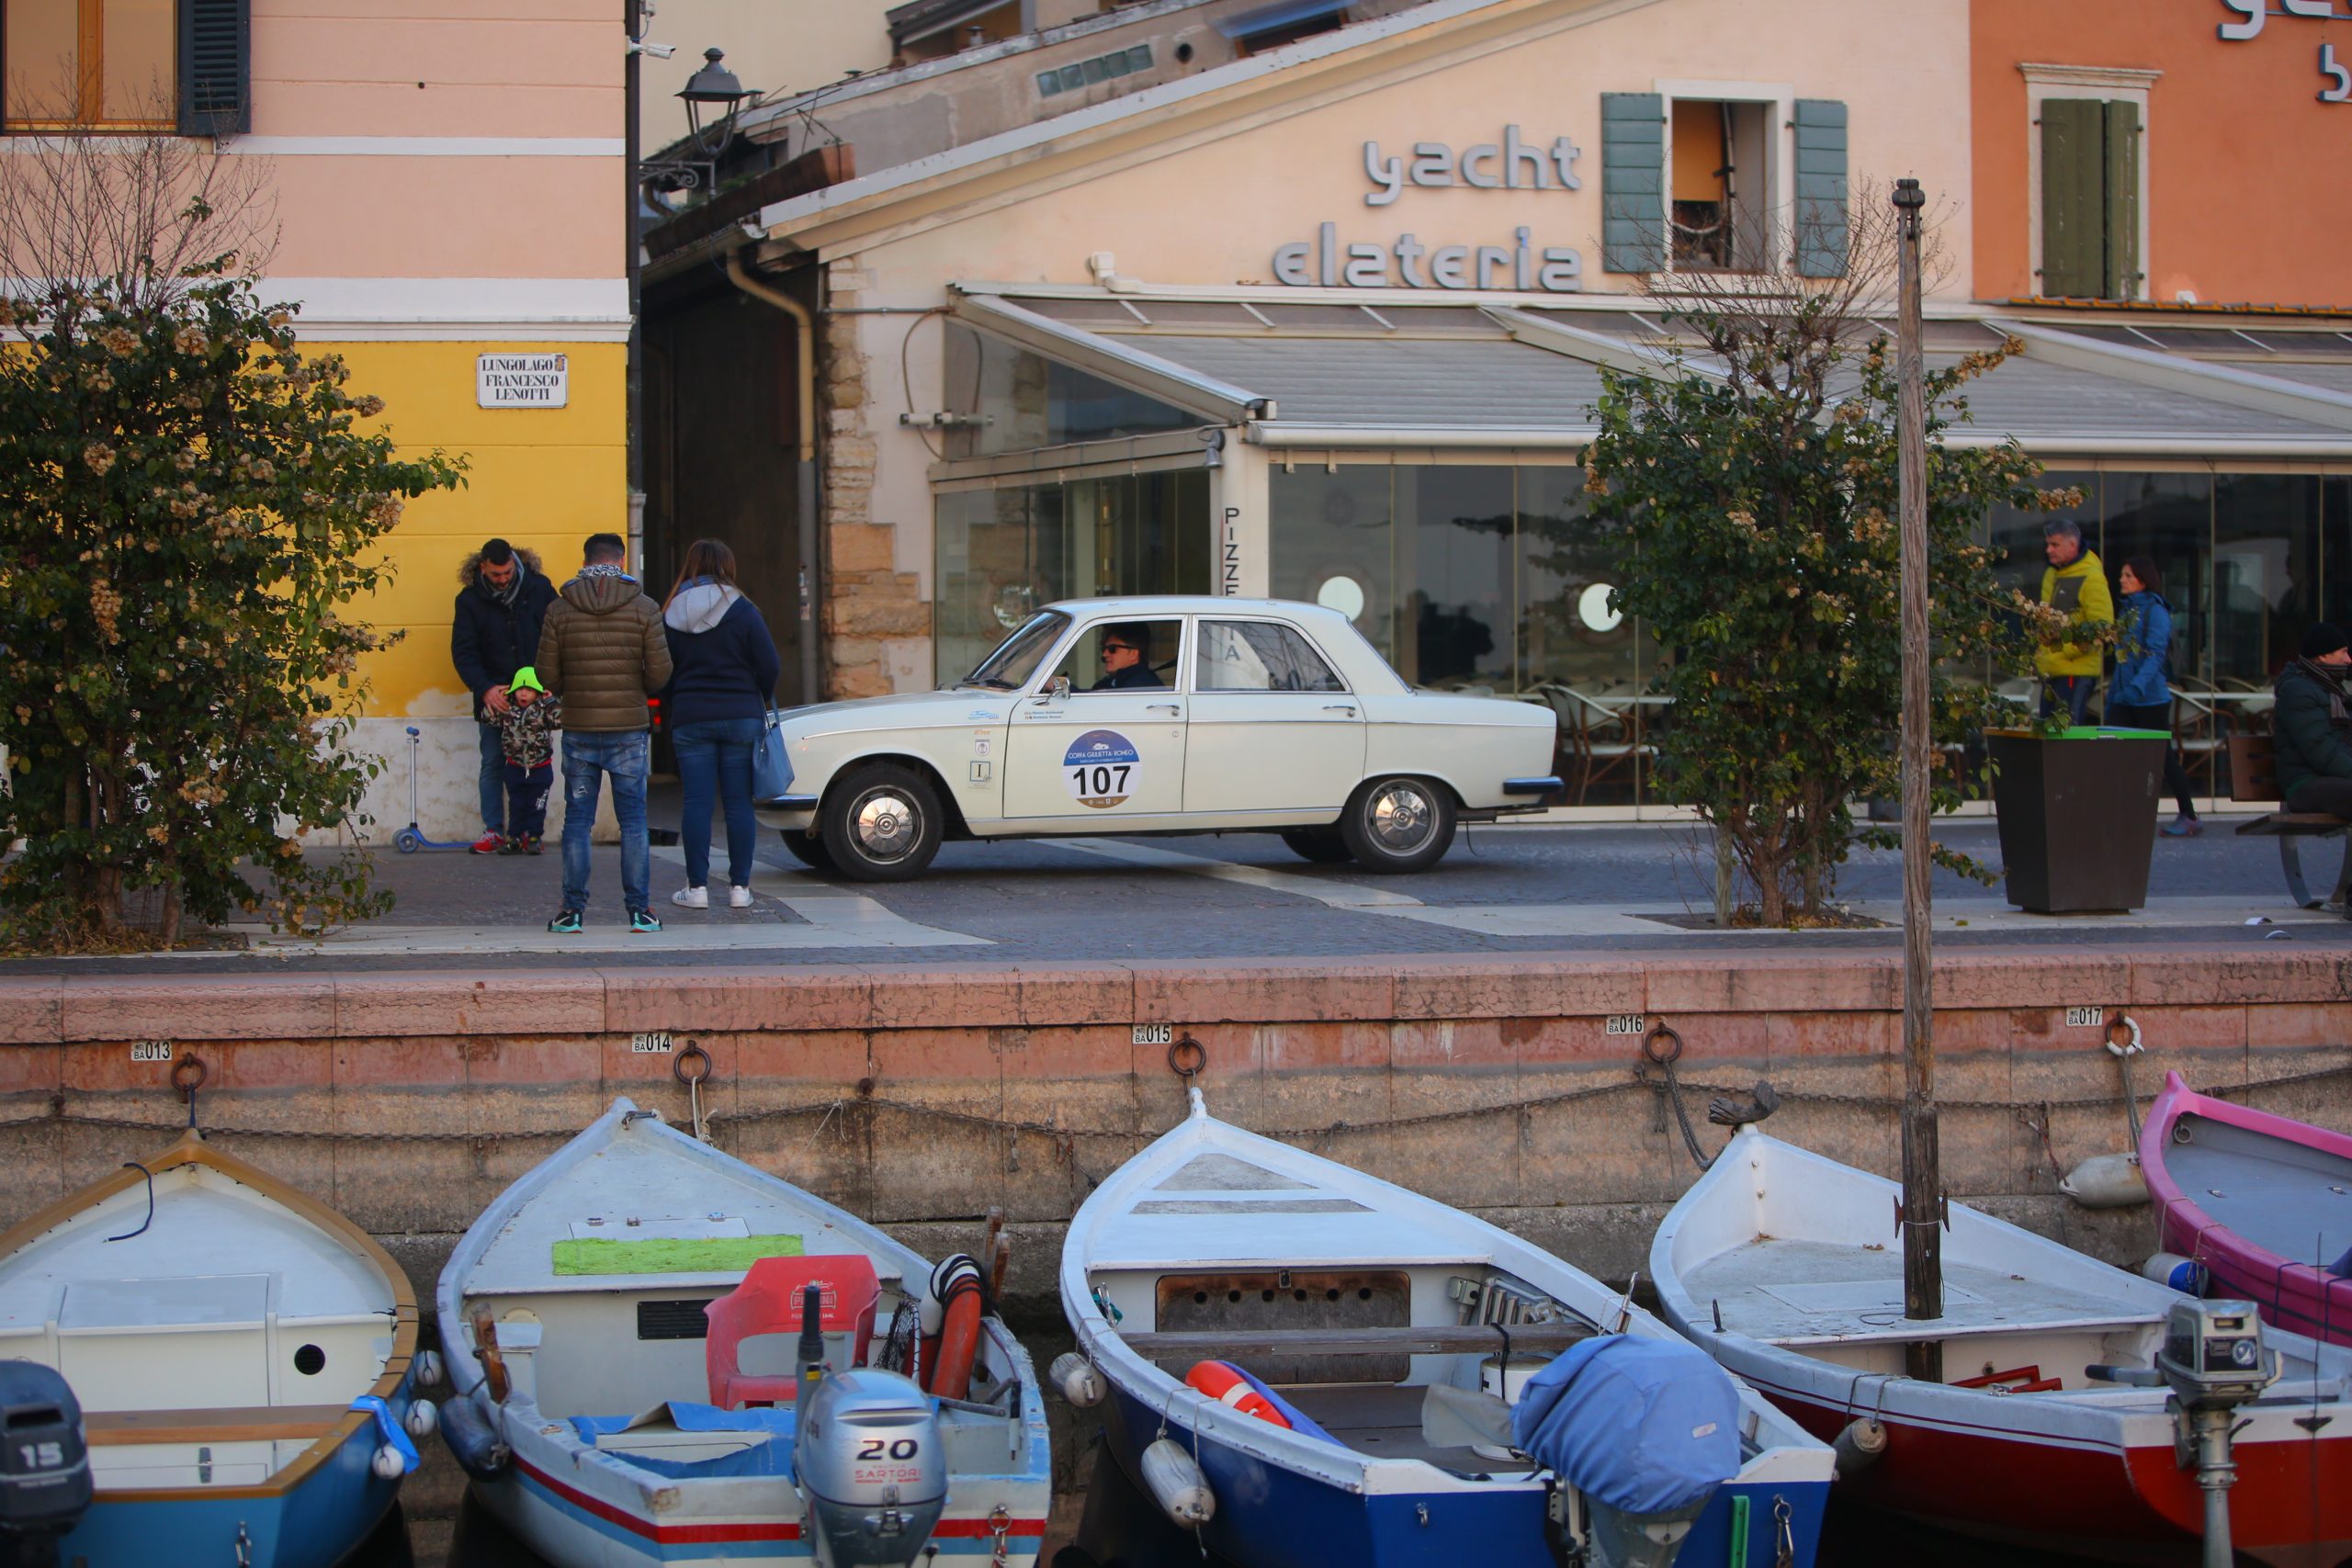 La Coppa Giulietta&Romeo Riporta lo Spirito delle Auto d’Epoca sullo Splendido Lago di Garda.